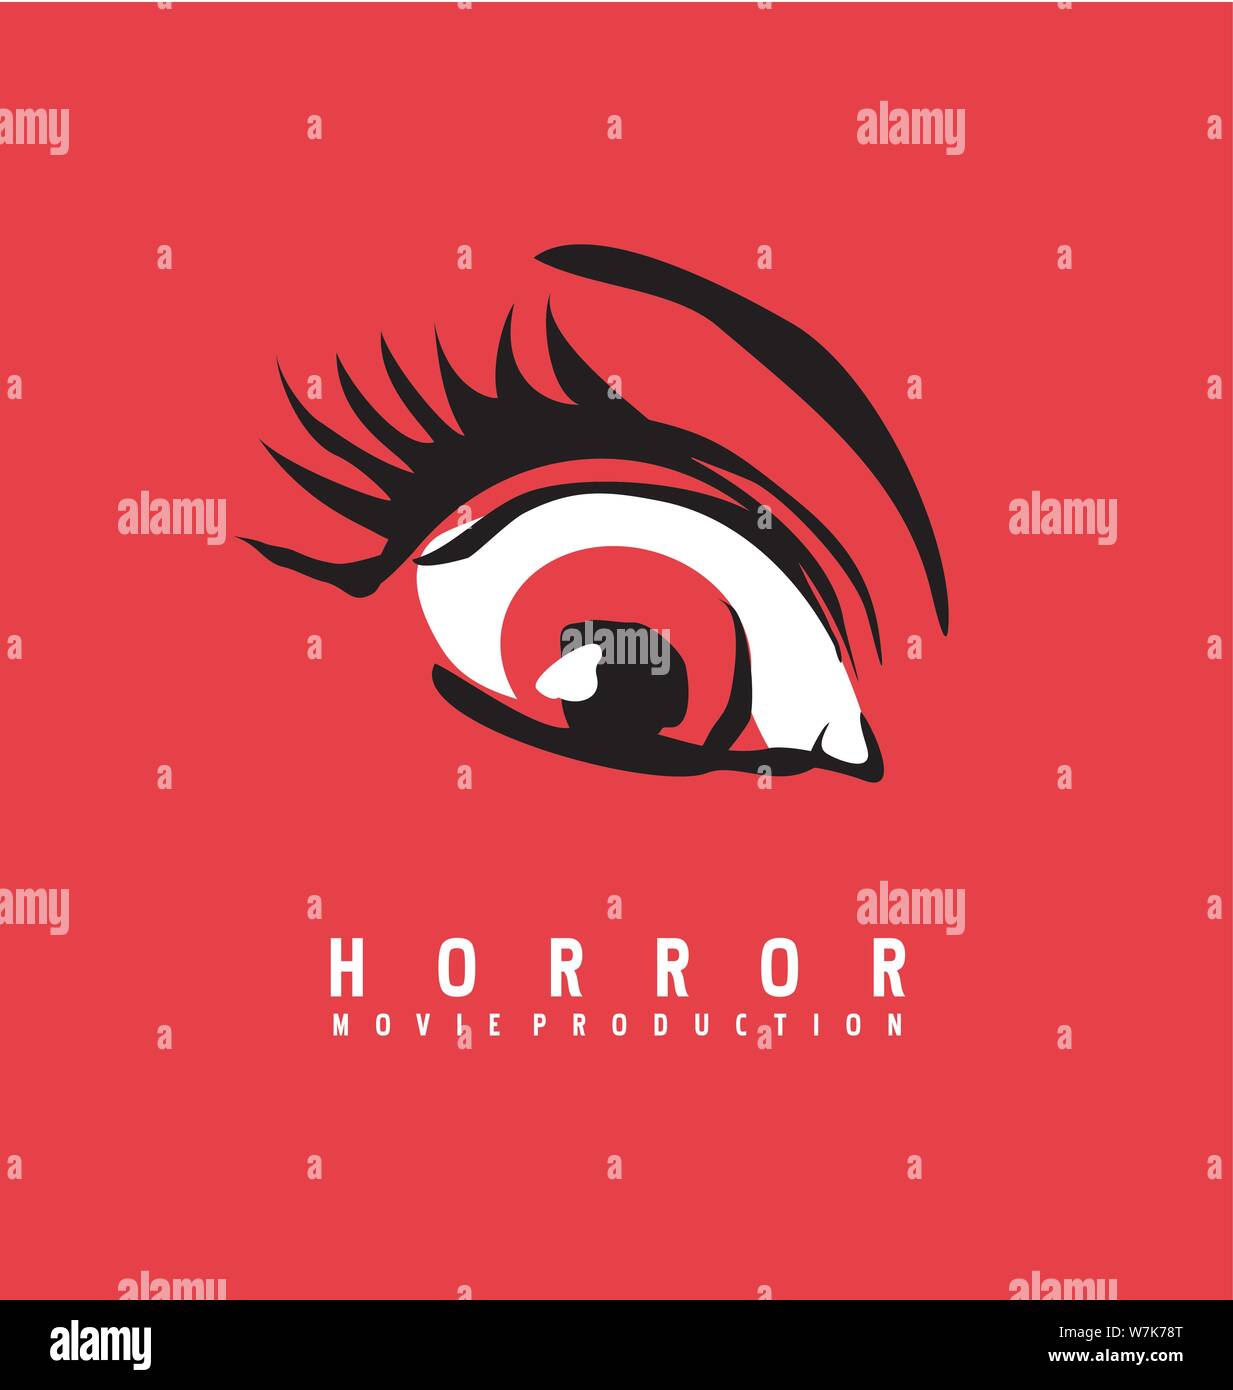 Logotipo de la empresa de producción de películas de horror del concepto de diseño. Símbolo ojo rojo sobre fondo de dibujo. Ilustración vectorial. Ilustración del Vector